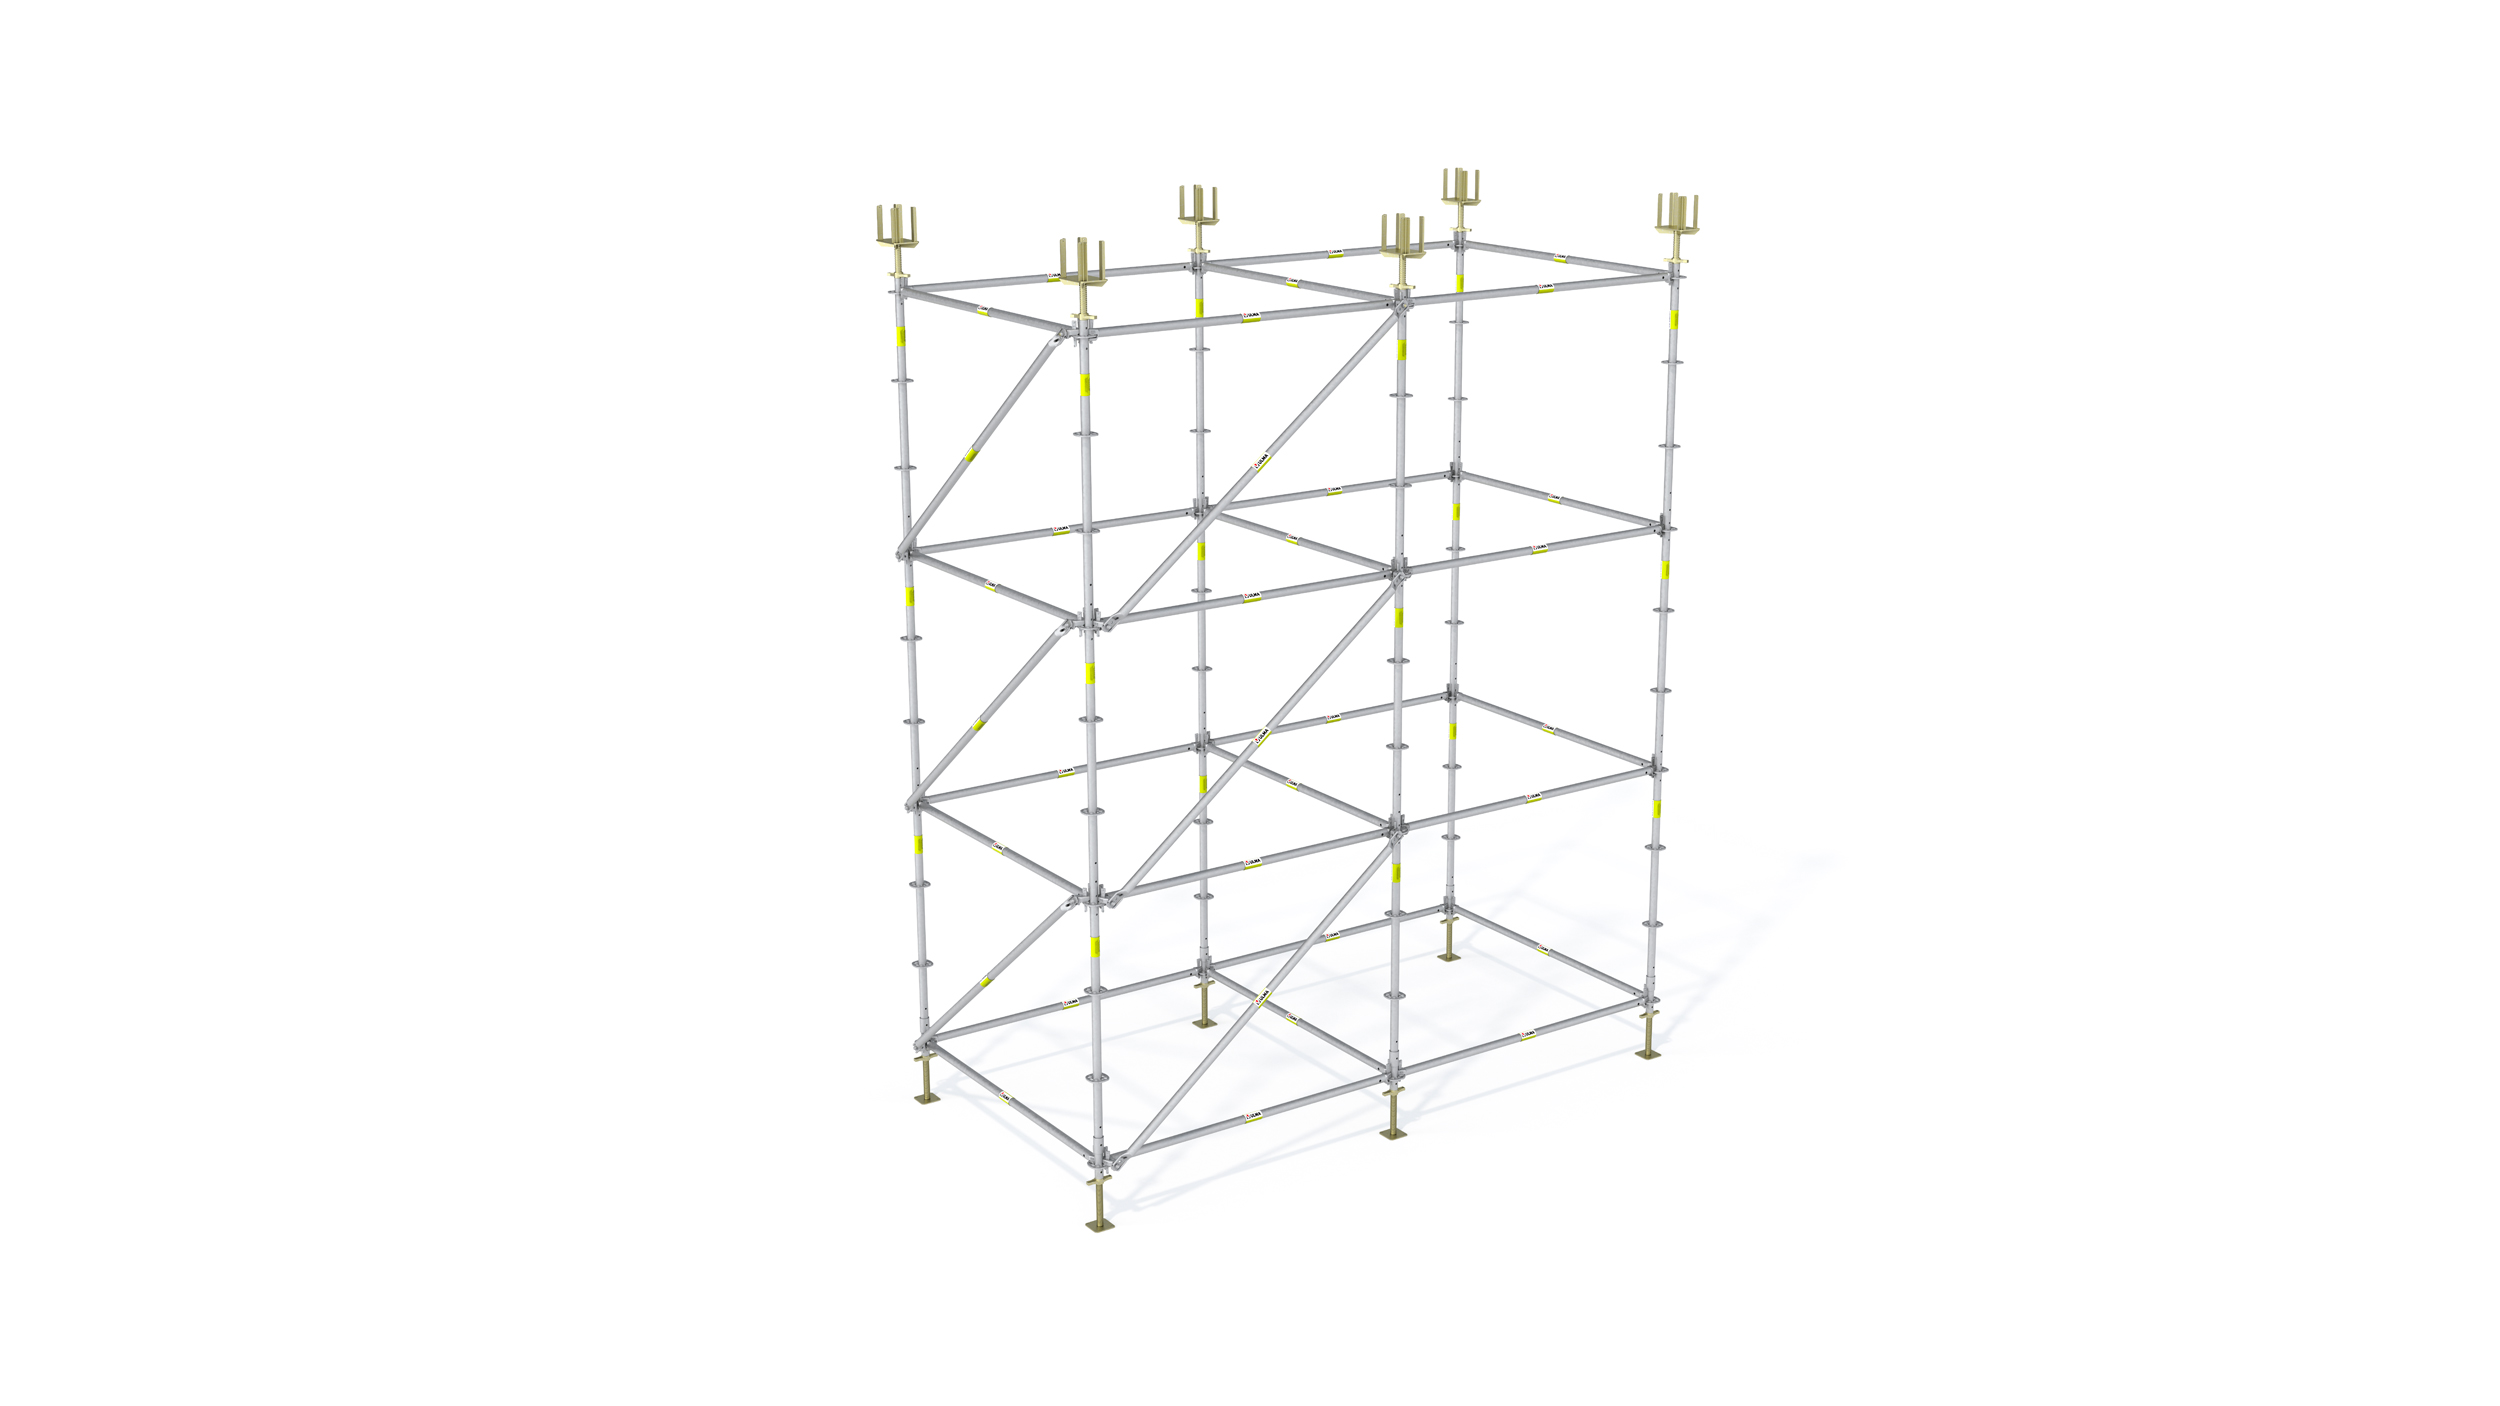 Sistema di puntellazione estremamente flessibile. È possibile montare configurazioni multiple di torri, in modo rapido e semplice. Concepito principalmente per la costruzione di edifici.